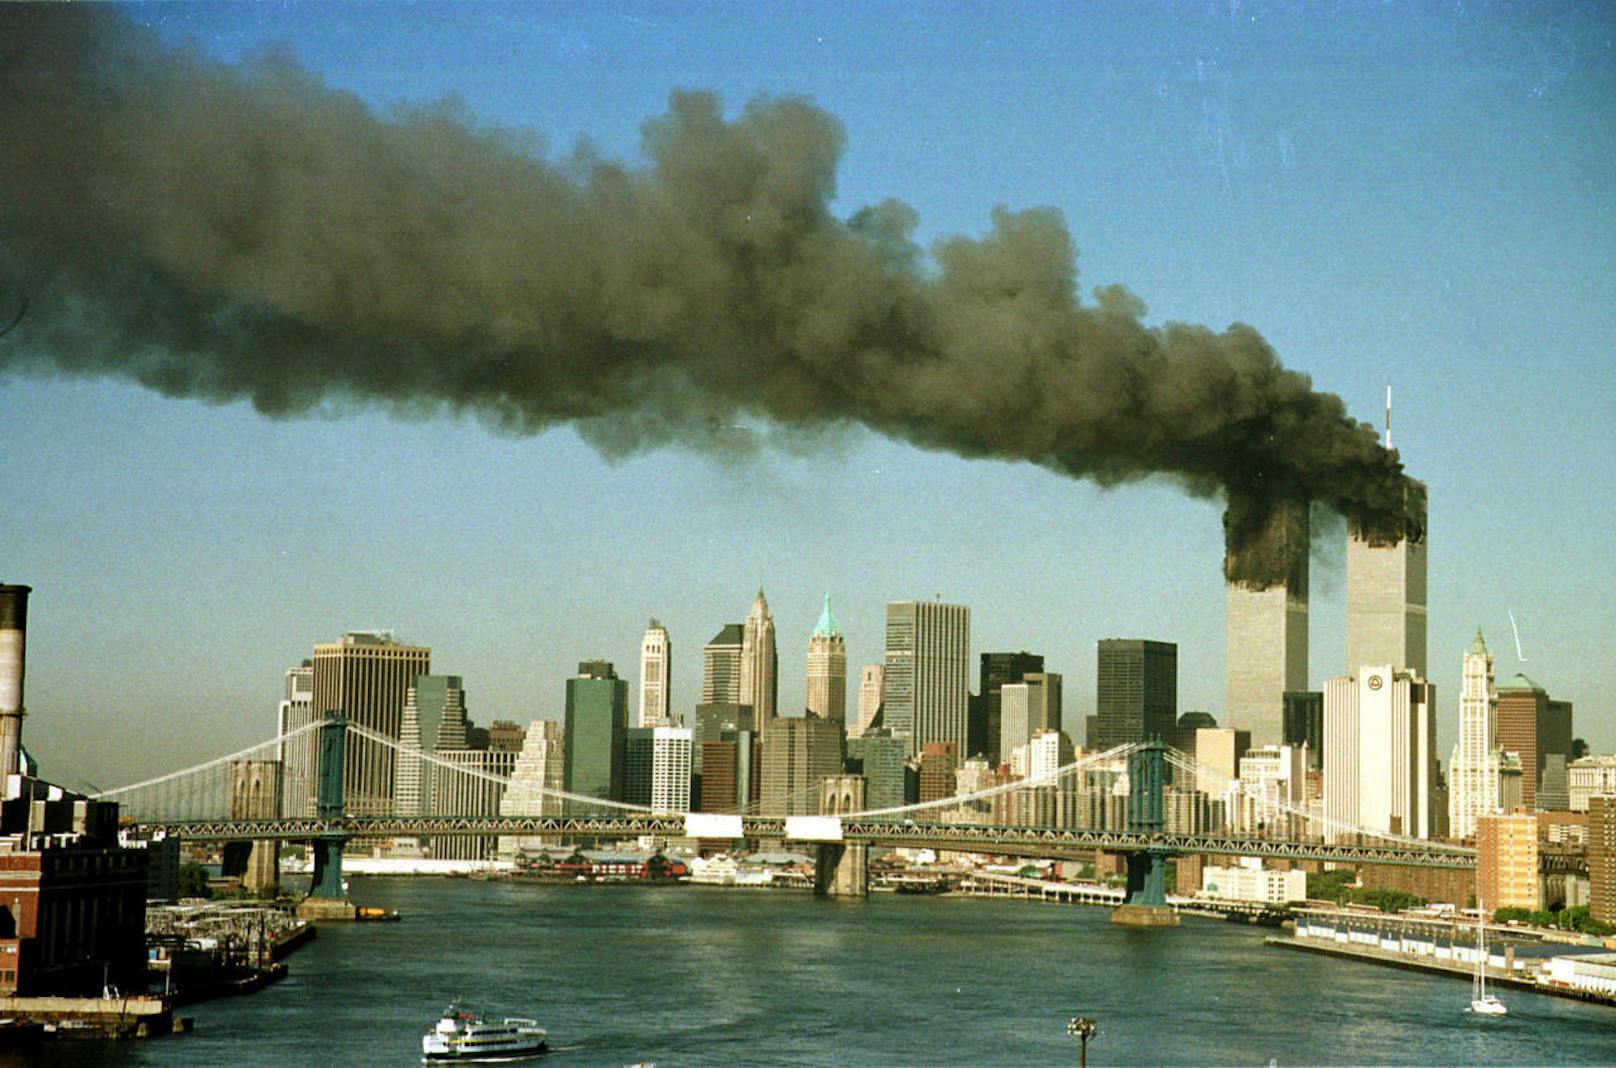 Bilder, die man nie vergisst: Die brennenden Türme des World Trade Centers am 11. September 2001 in New York.